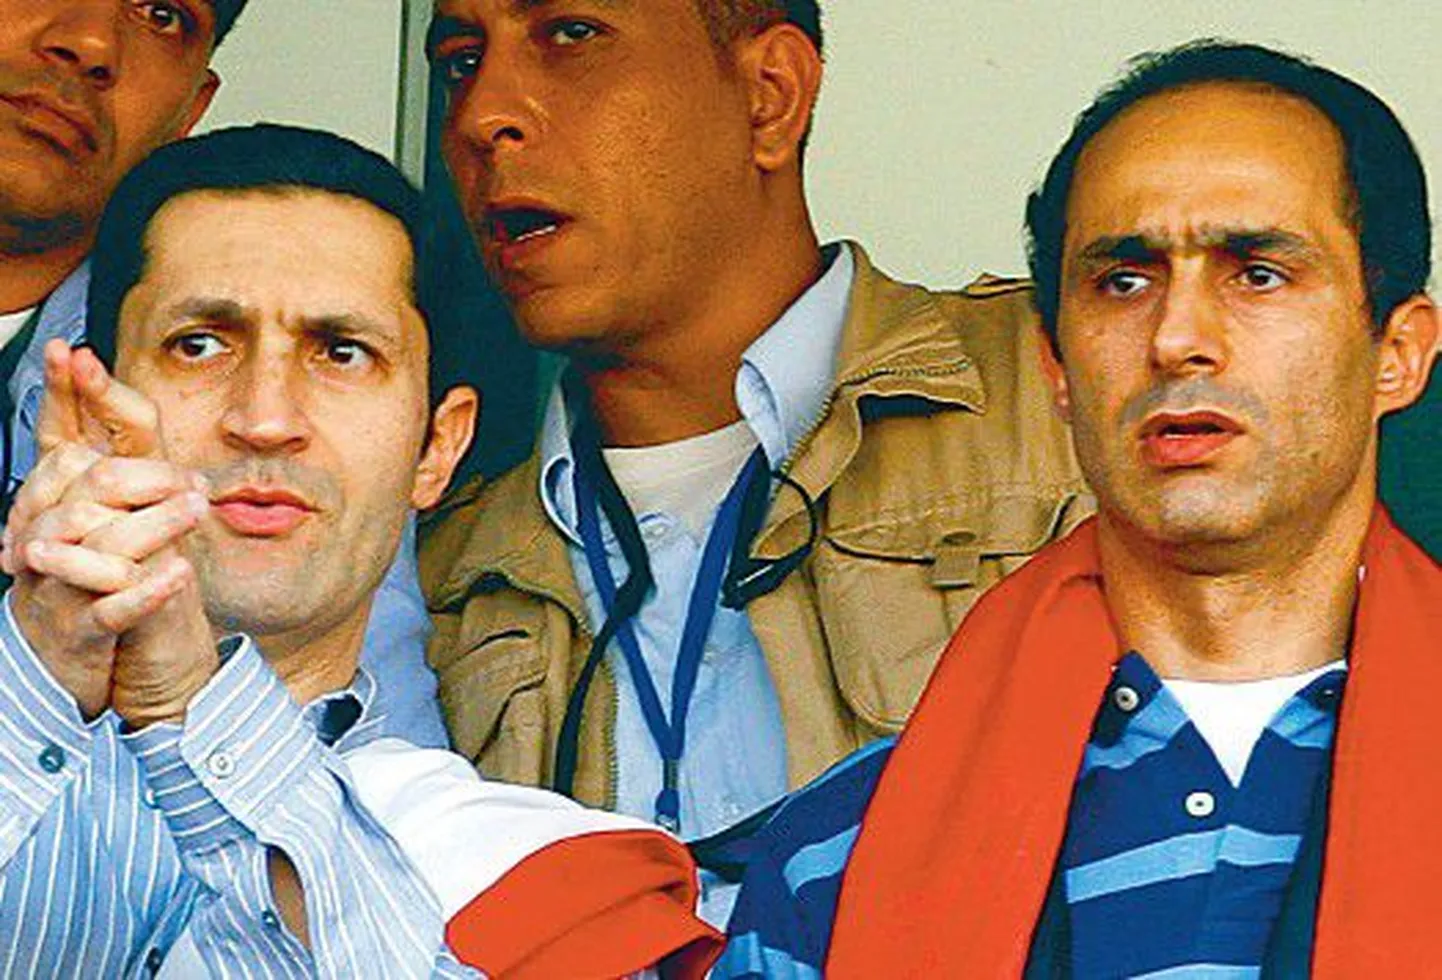 Вчера сыновья бывшеего президента Египта Хосни Мубарака Аля (слева) и Гамаль (справа) был доставлены на допрос в каирскую тюрьму.